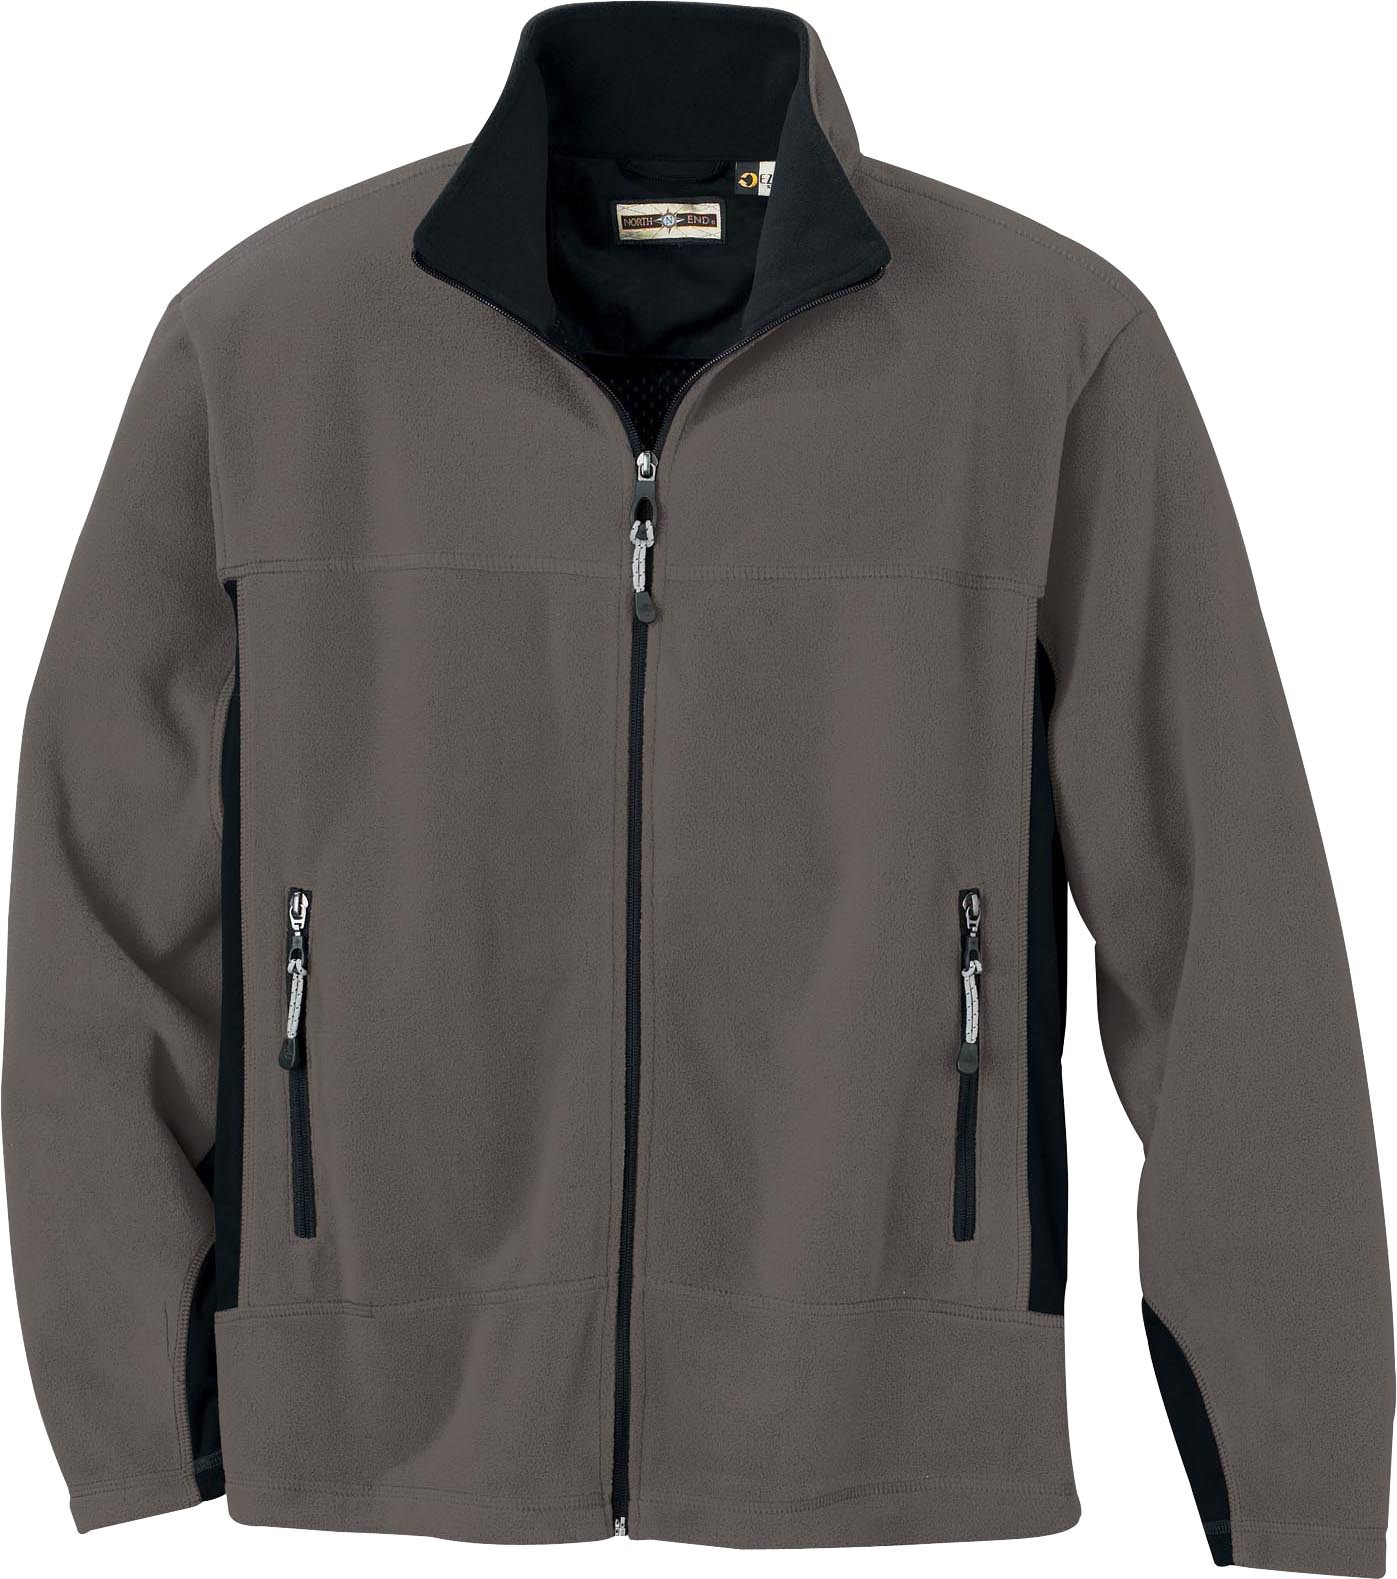 Ash City Bonded Fleece 88105 - Men's Fleece Bonded To Brushed Mesh Full-Zip Jacket